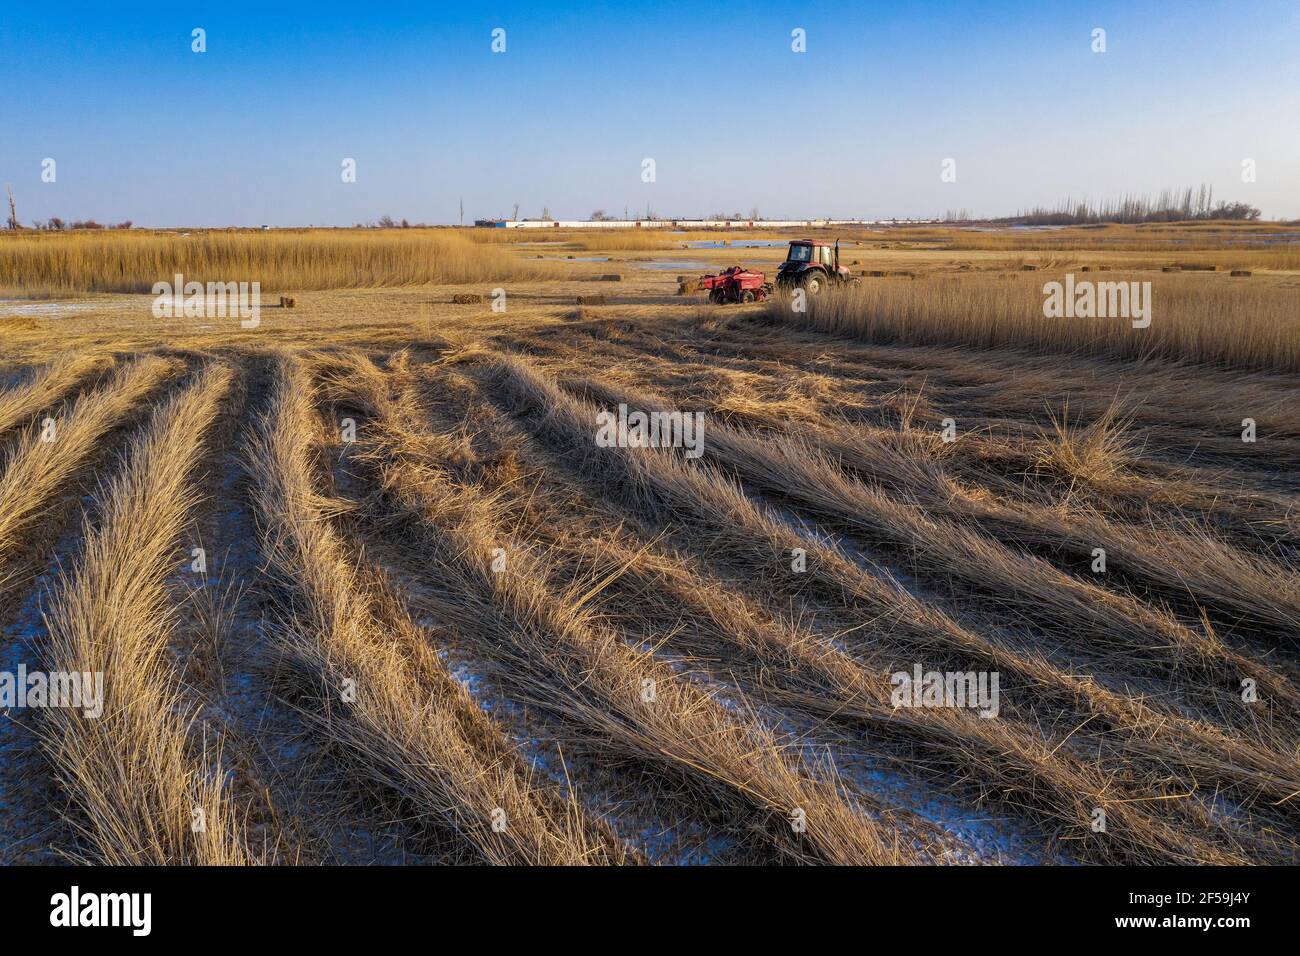 JIUQUAN, CHINE - 19 JANVIER 2021 - photo aérienne prise le 19 janvier 2021 montre que les agriculteurs récoltent des mauvaises herbes pour produire des fourrages dans une zone humide de Jiuquan, province de Gansu, Chine. (Photo de Yitiefanghong / Costfoto/Sipa USA) Banque D'Images